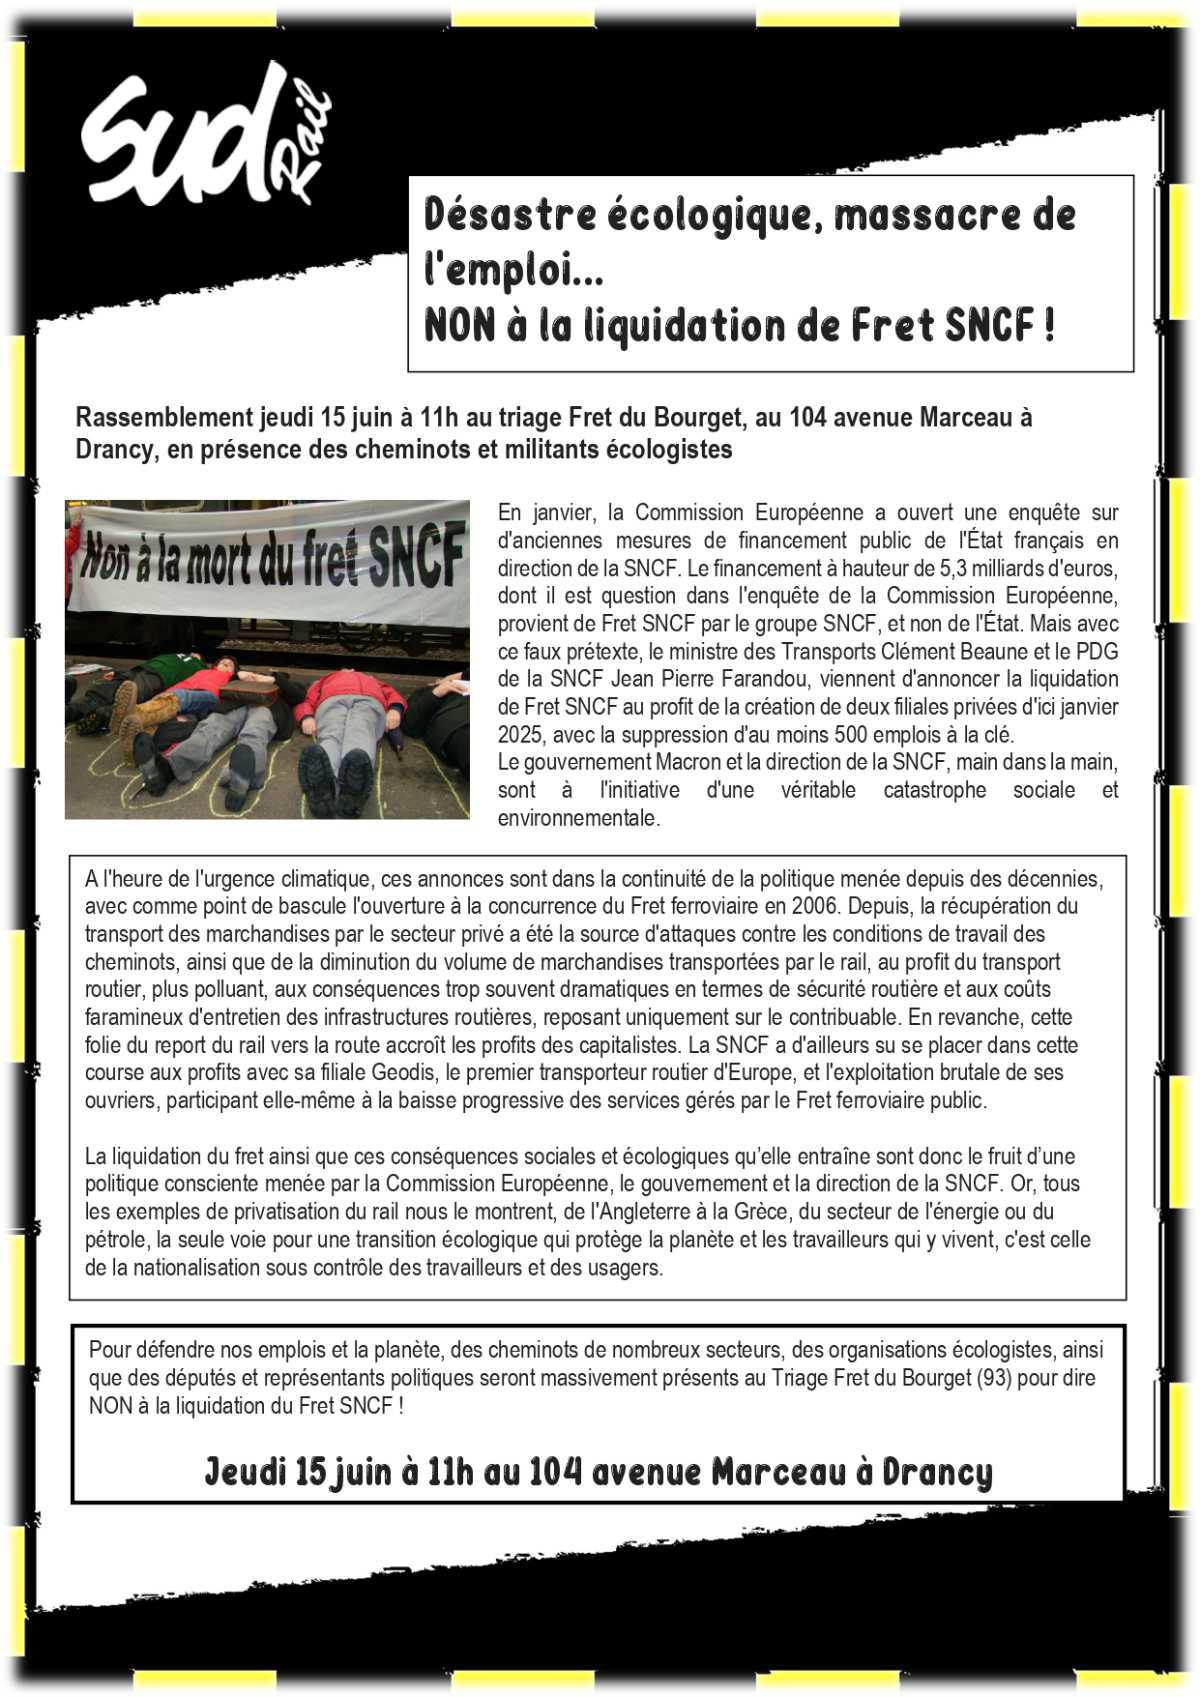 FRET - Désastre écologique, massacre de l'emploi...NON à la liquidation de Fret SNCF !